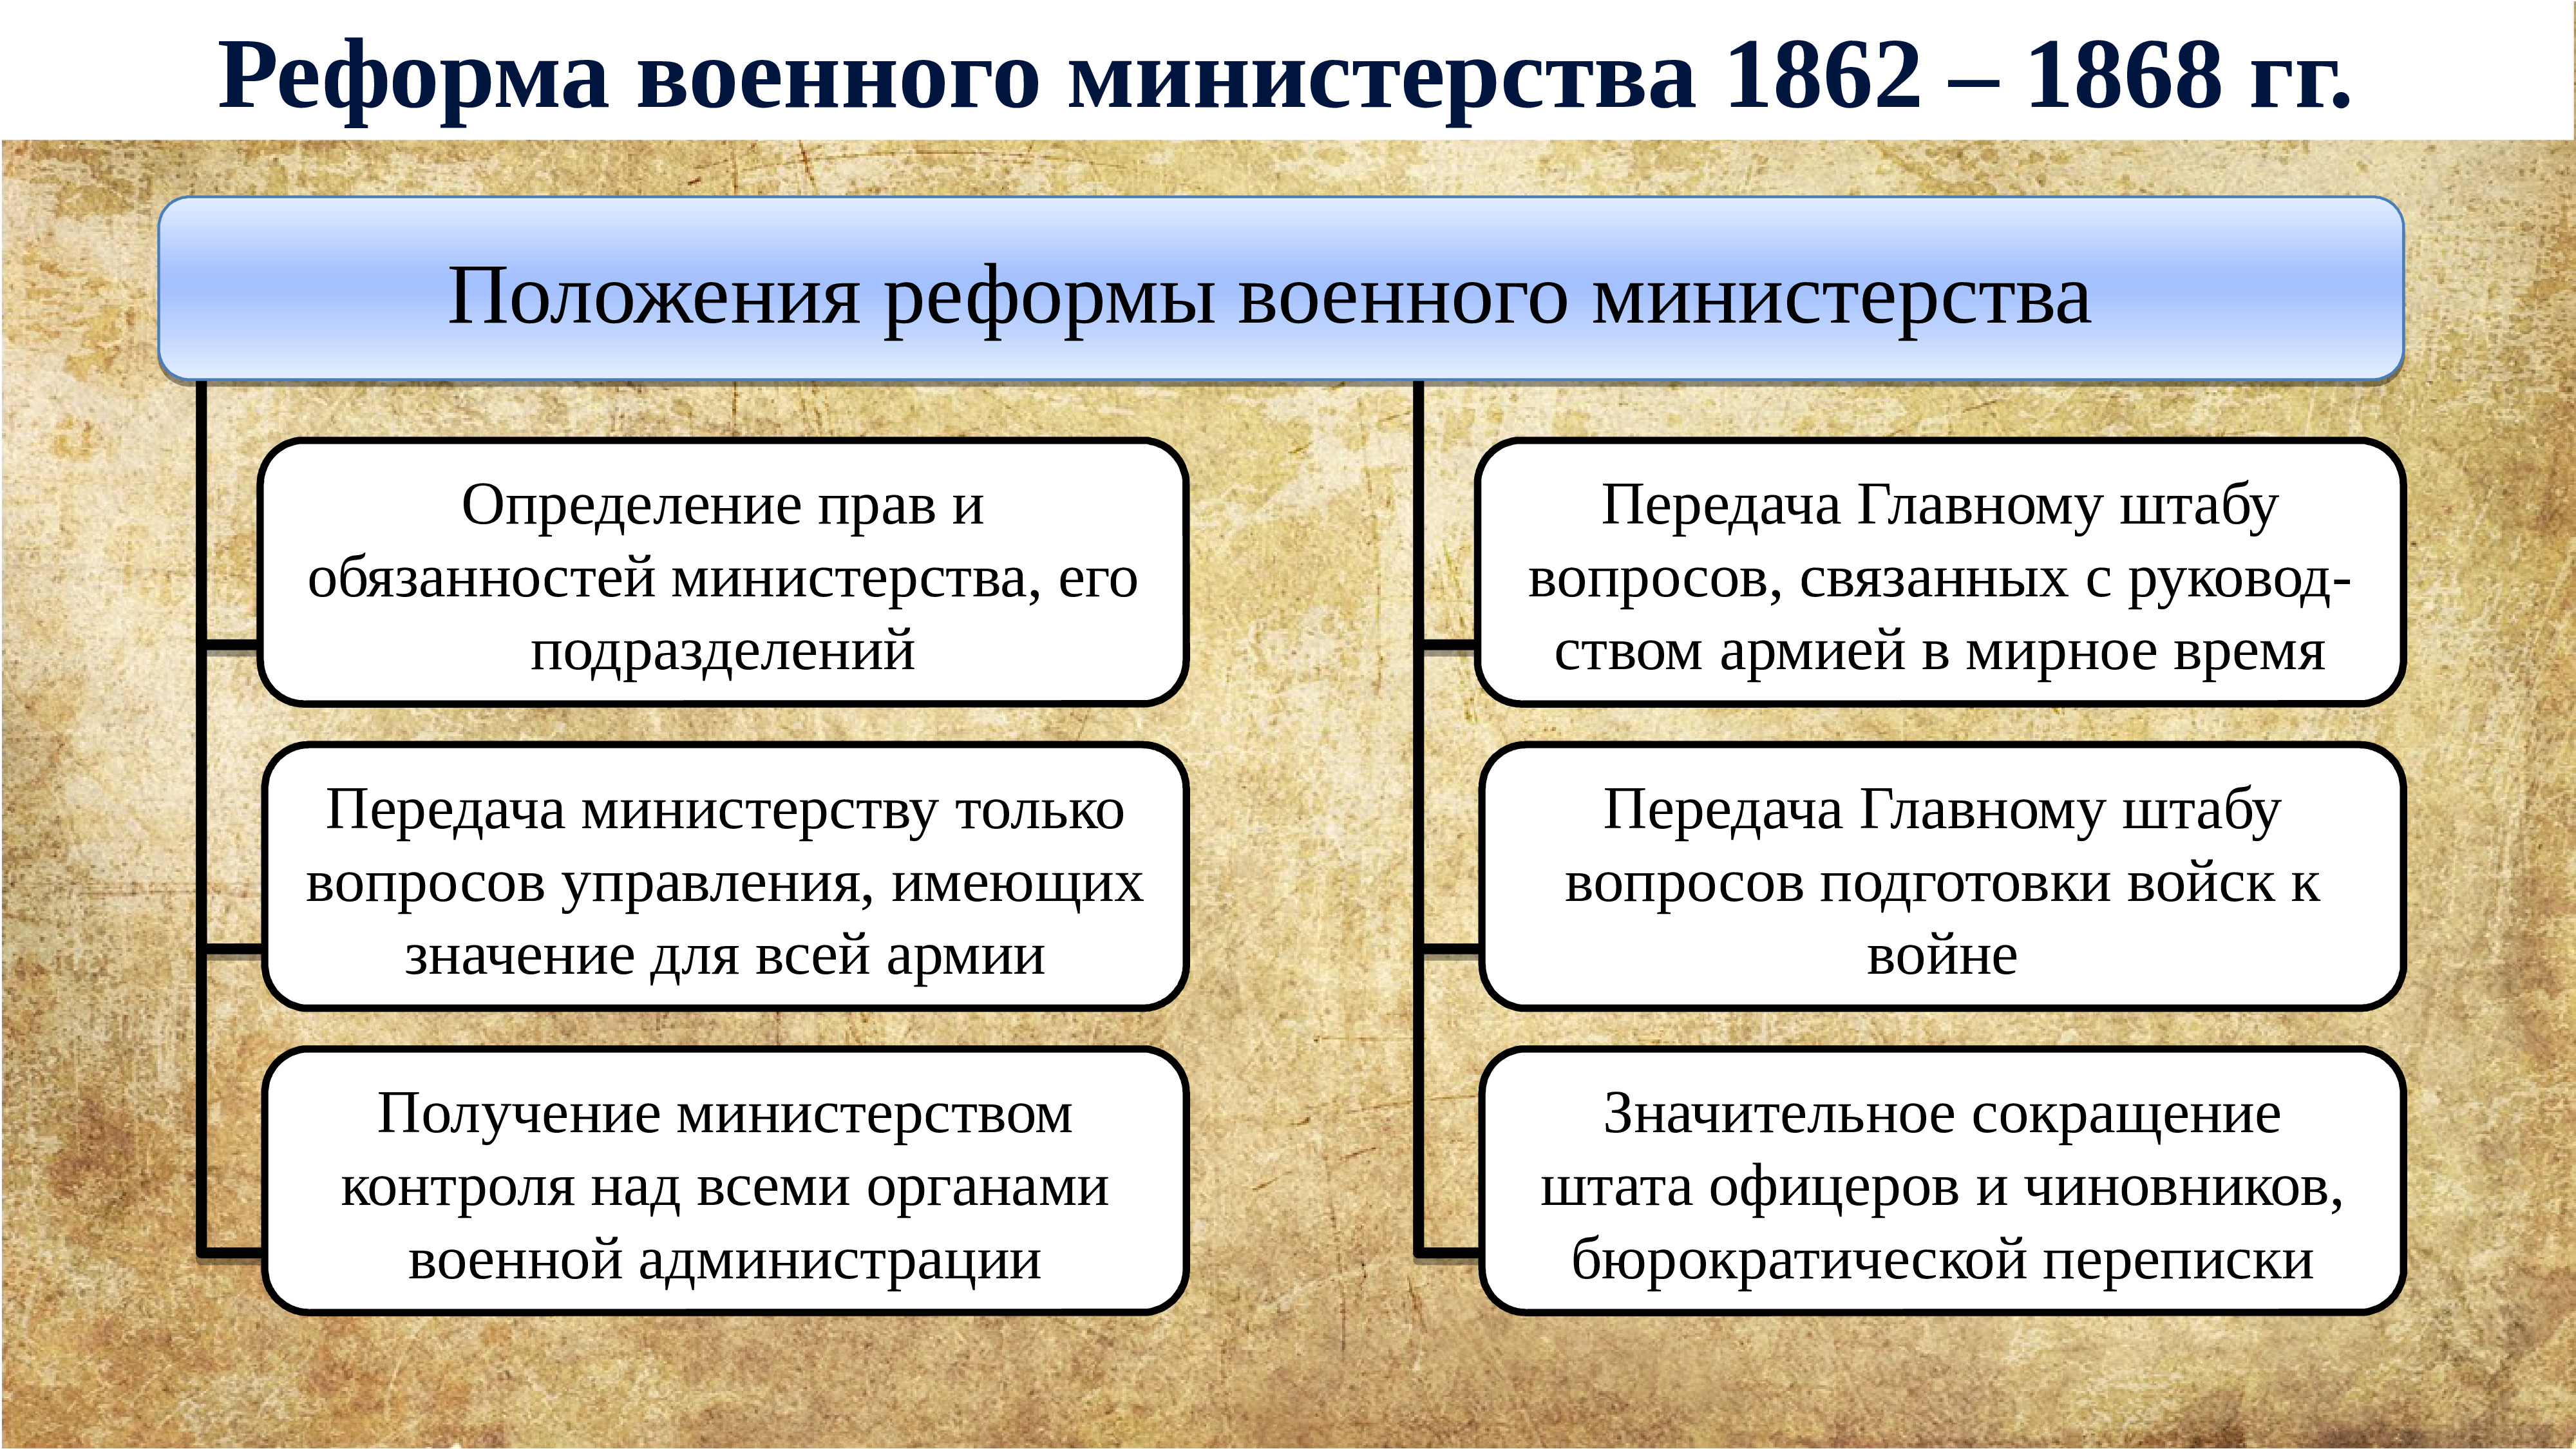 Результатом либеральных реформ 60 70 х гг. Презентация либеральные реформы 60-70-х годов XIX века.